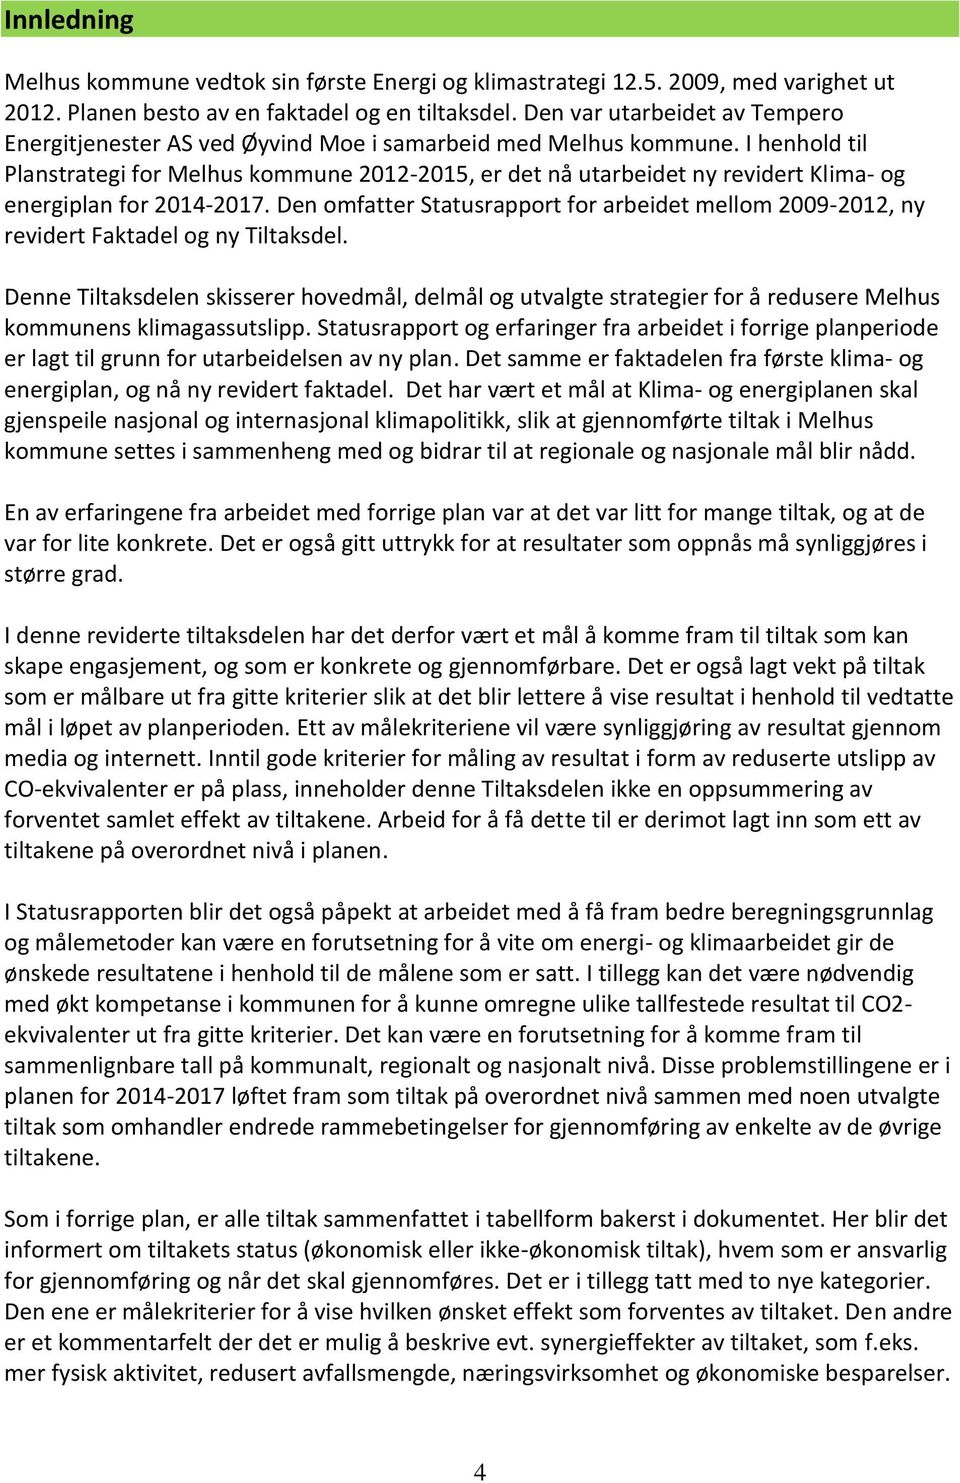 I henhold til Planstrategi for Melhus kommune 2012-2015, er det nå utarbeidet ny revidert Klima- og energiplan for.